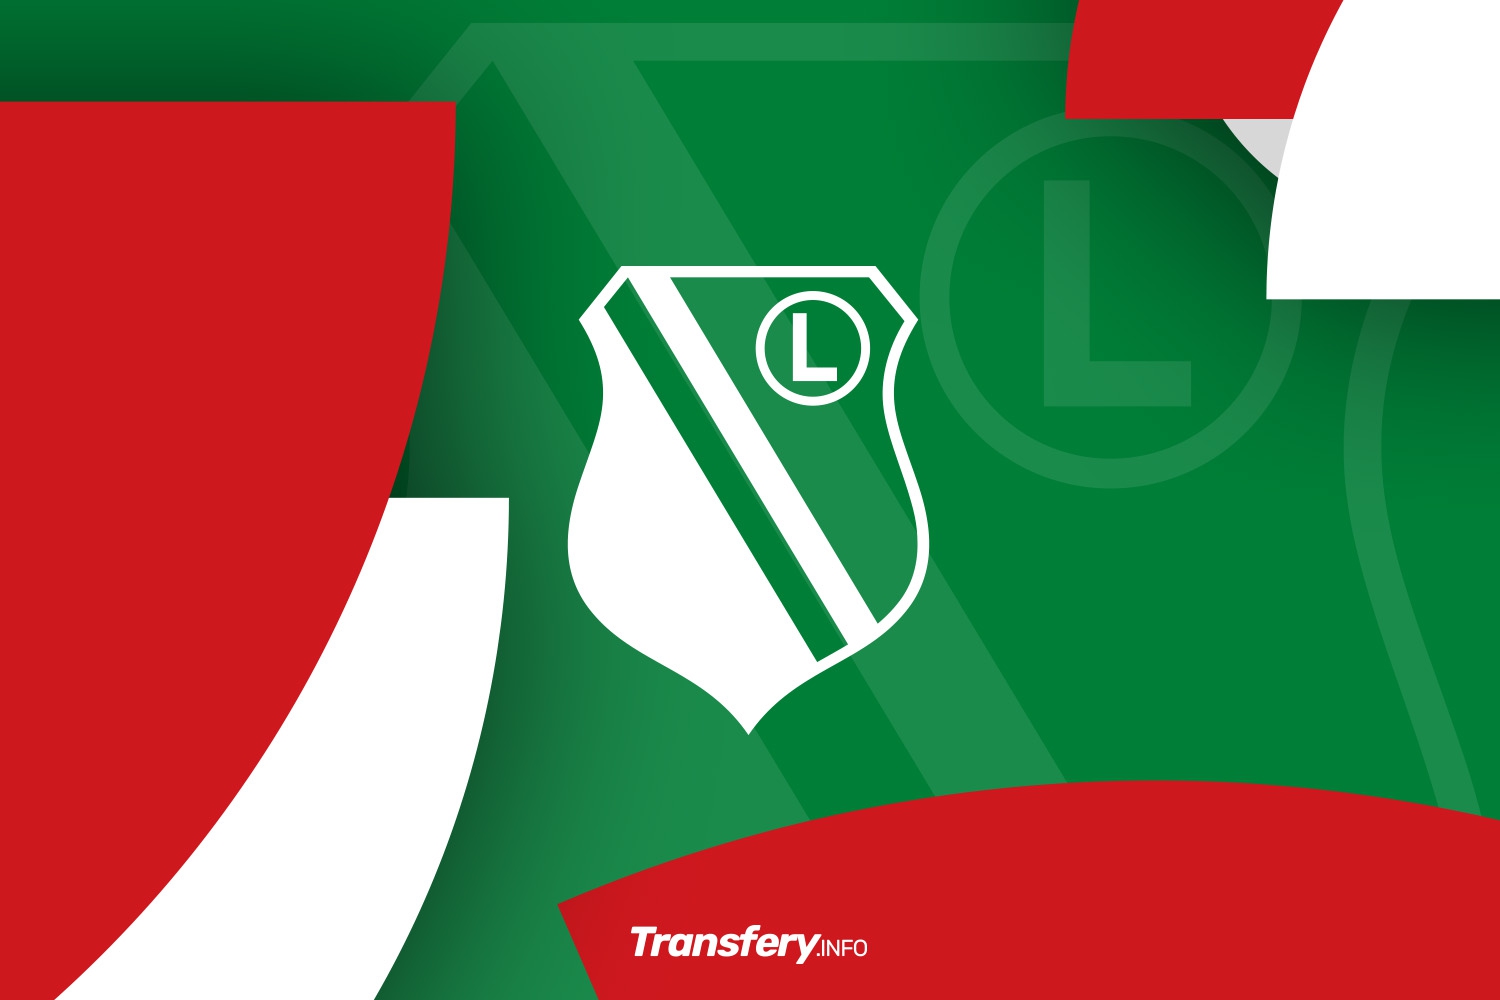 OFICJALNIE: Legia Warszawa nie pozostaje bierna. Mamy stanowisko w sprawie Superligi